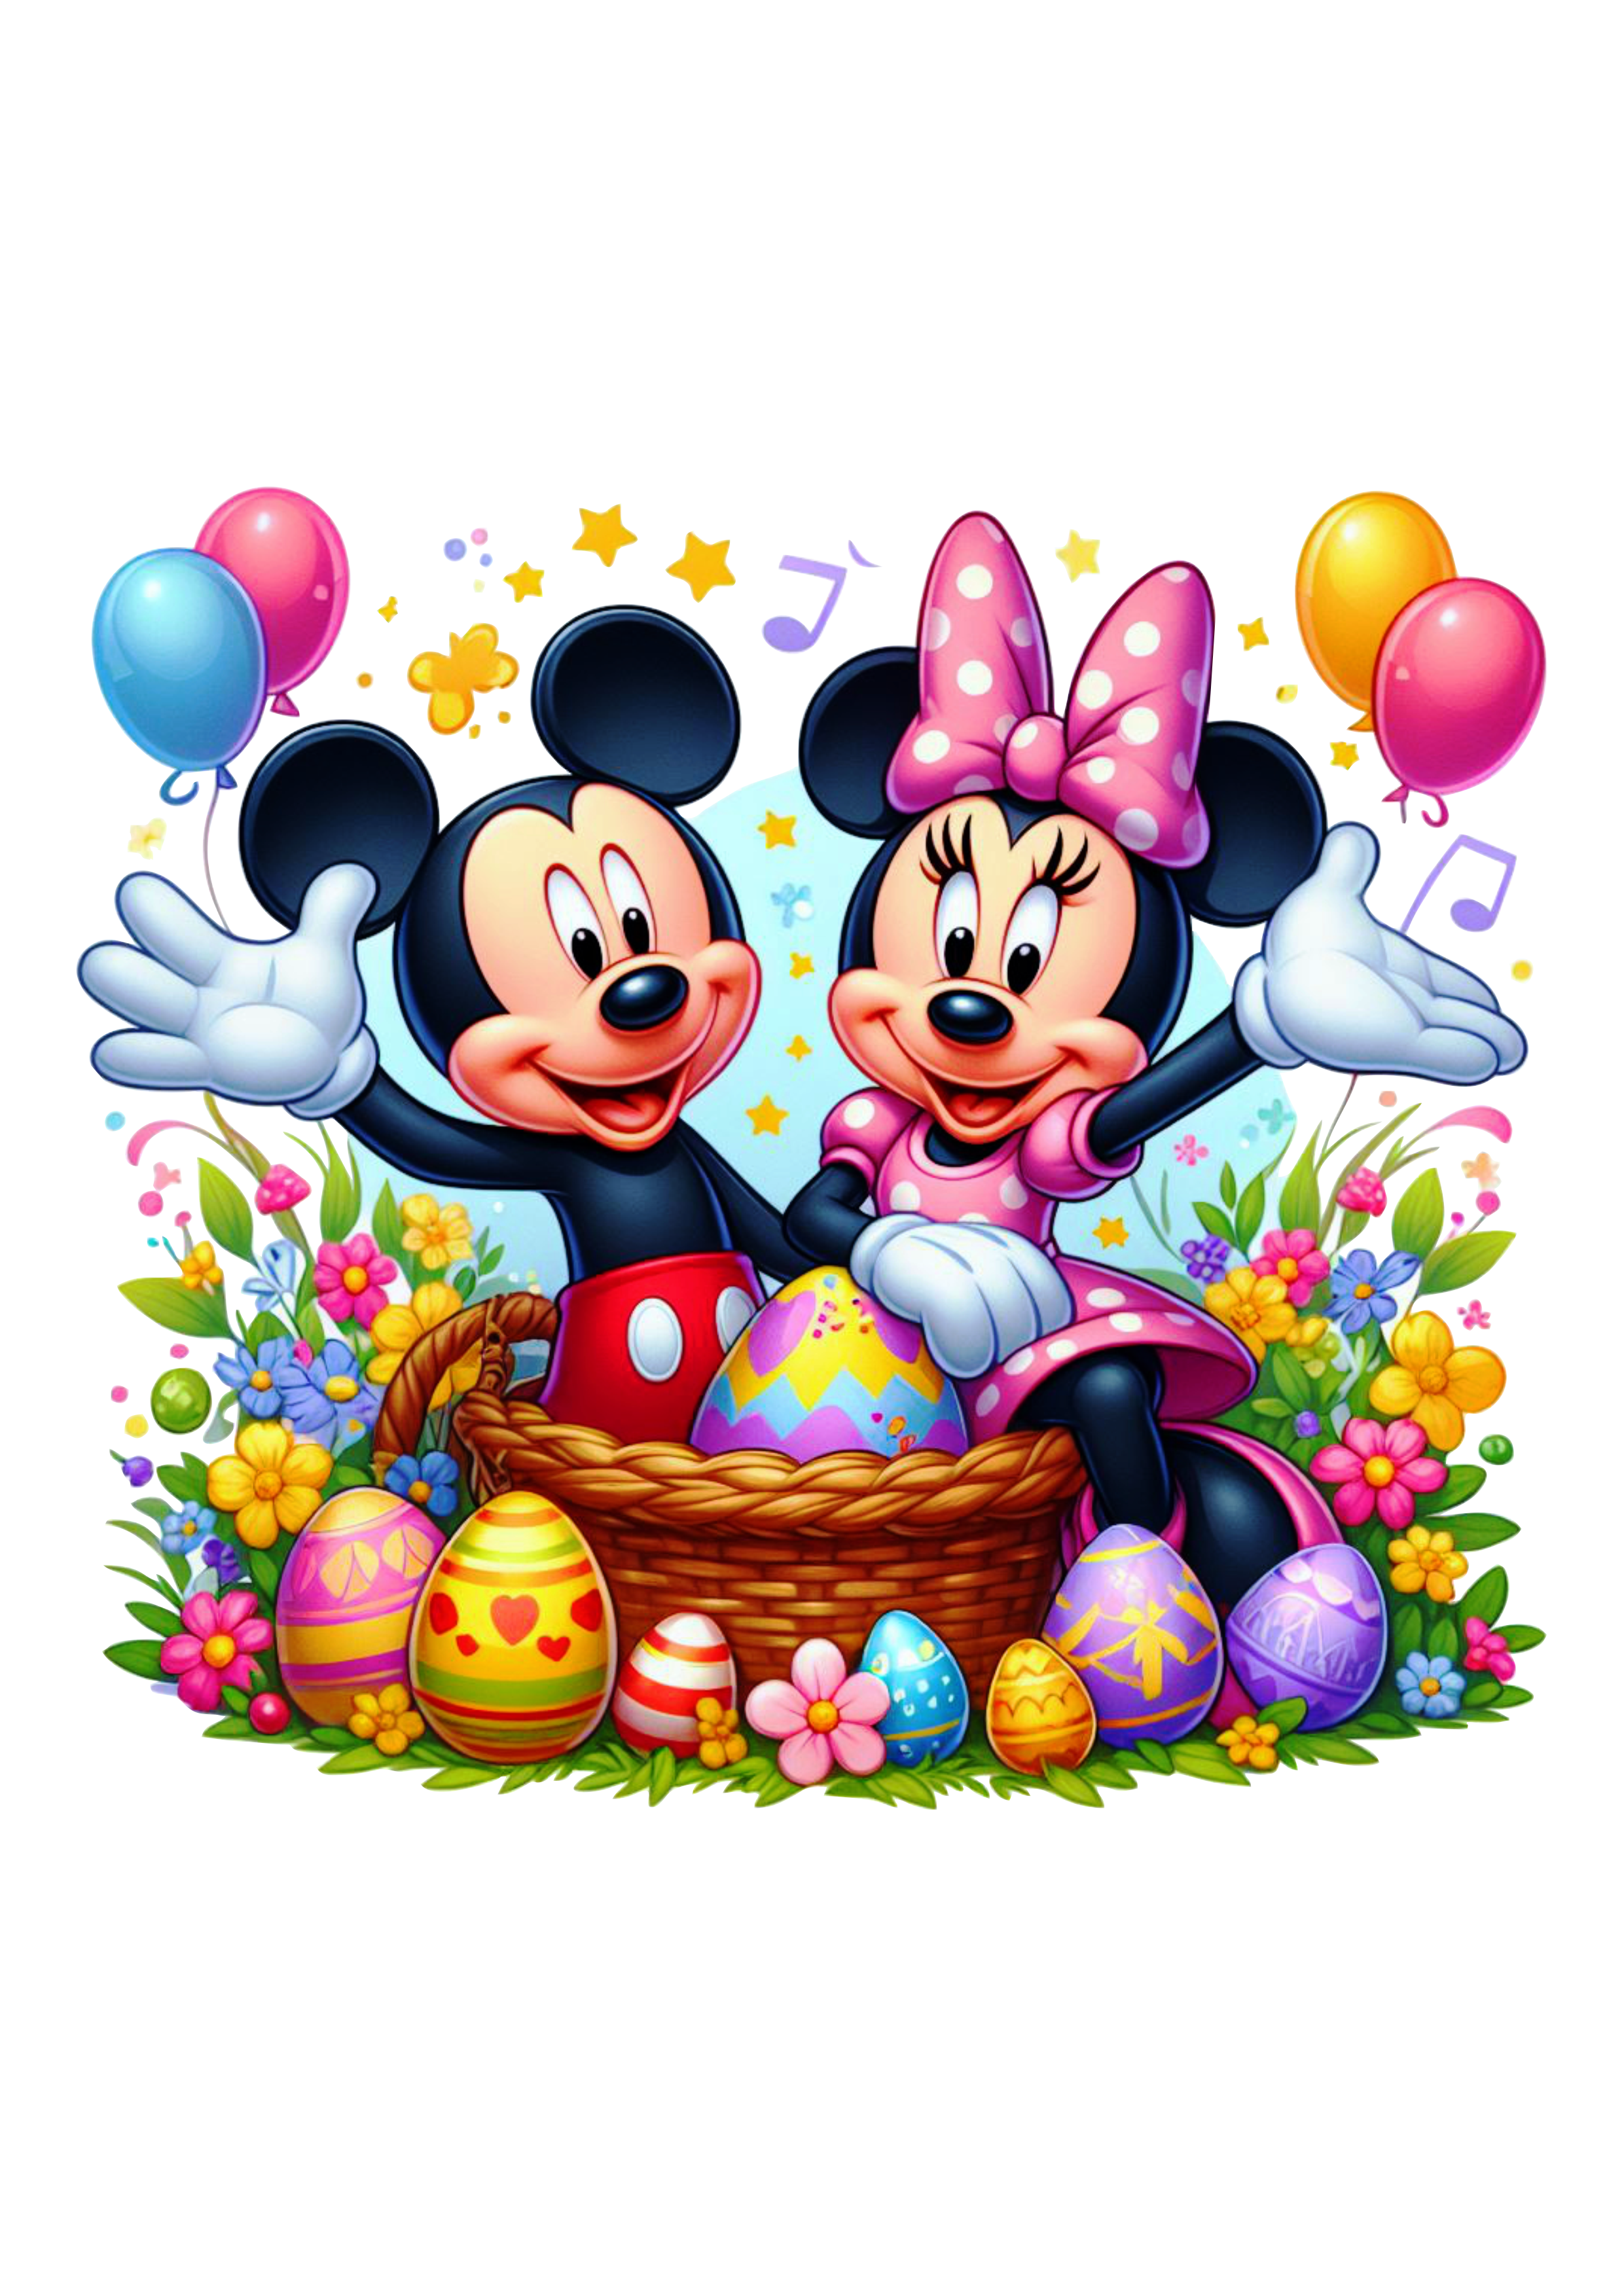 Mickey e Minnie especial de páscoa fundo transparente ovos de chocolate clipart vetor ilustração artes visuais png